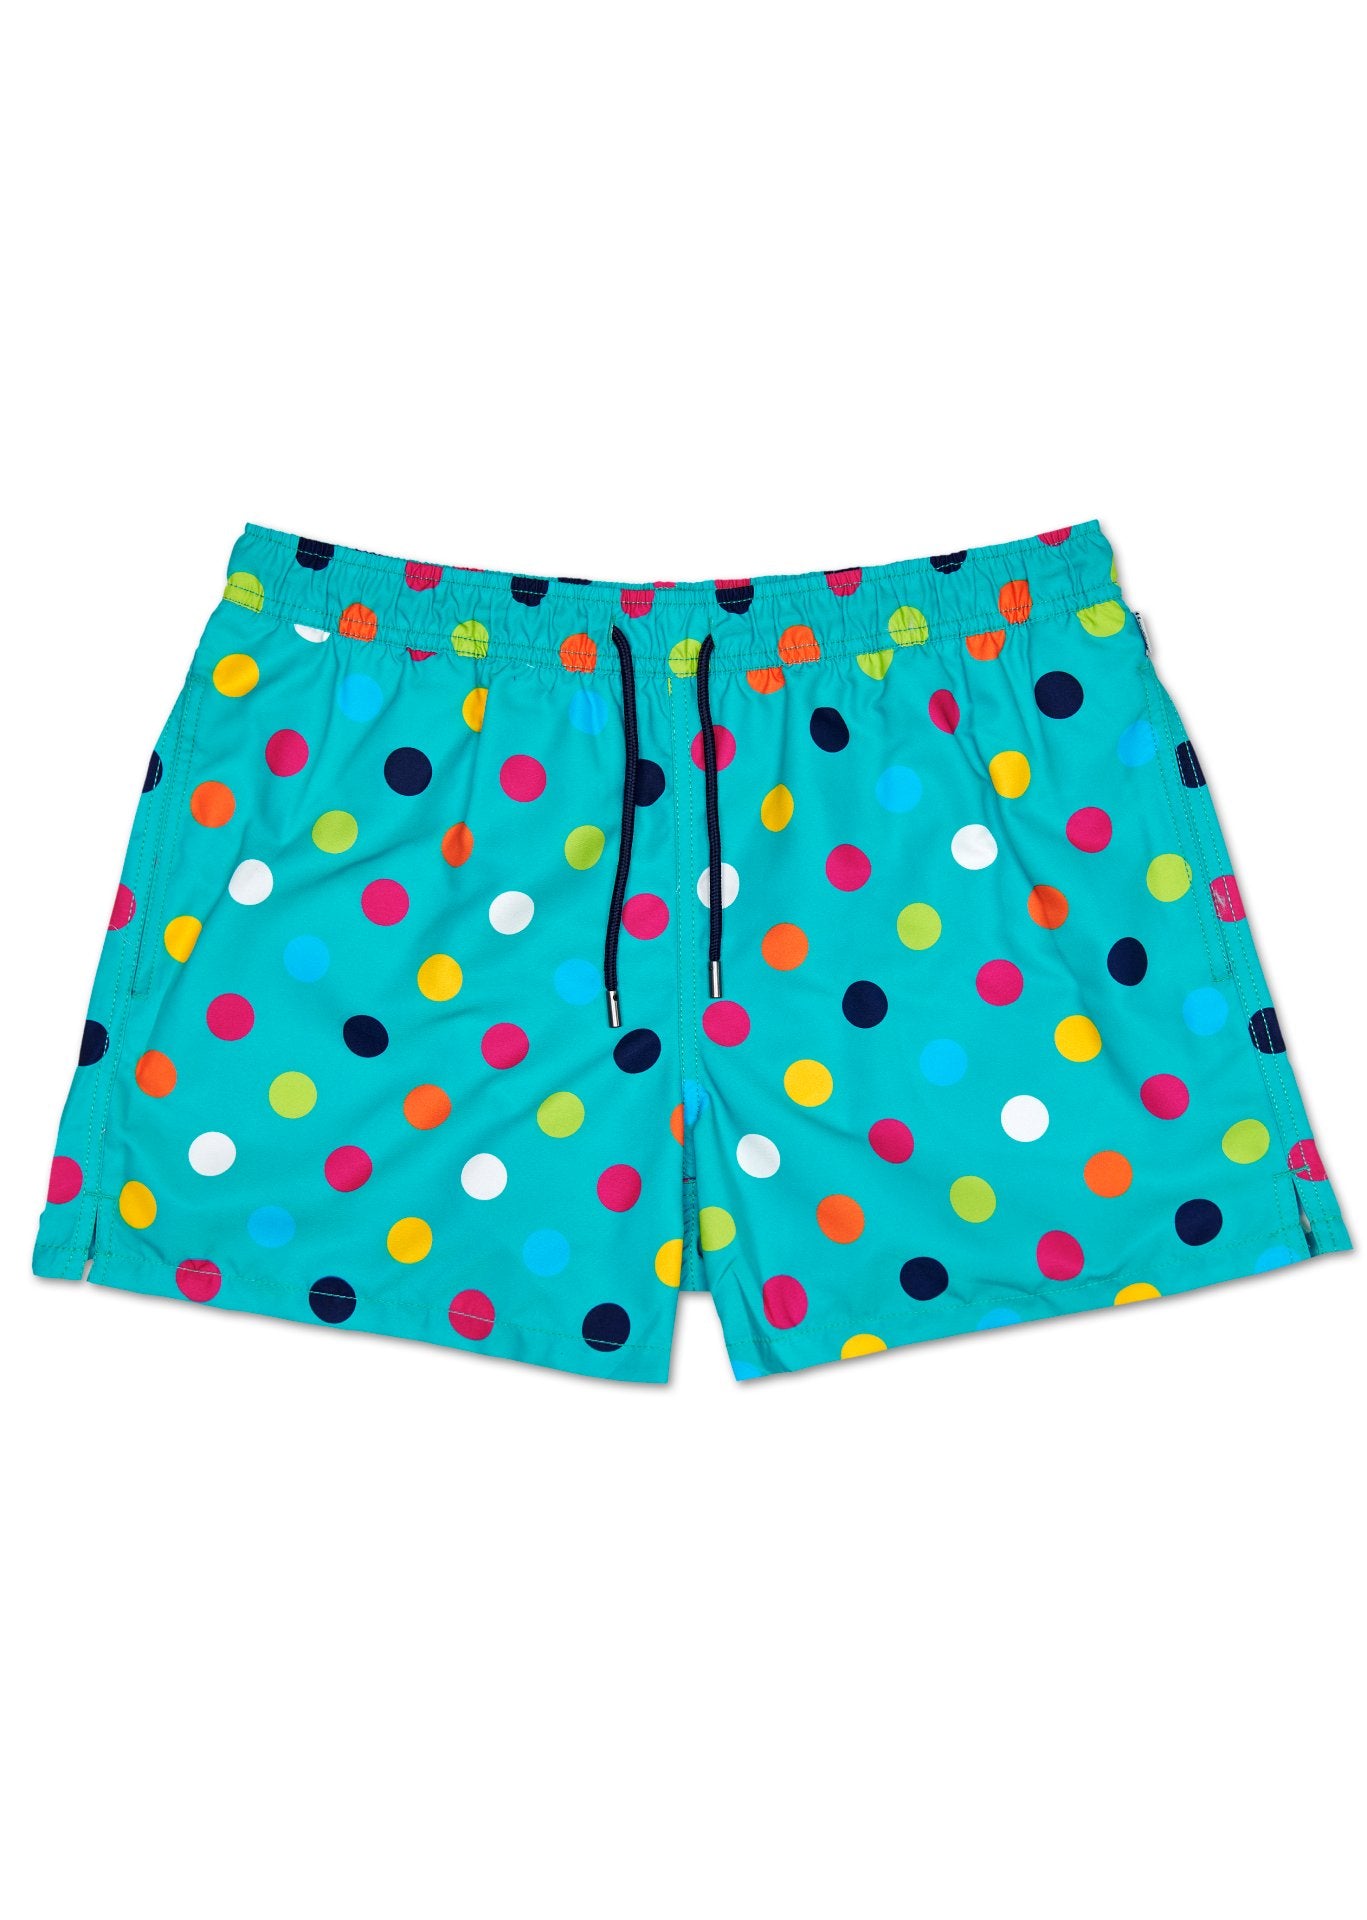 Pánské tyrkysové plavky Happy Socks s puntíky, vzor Big Dot